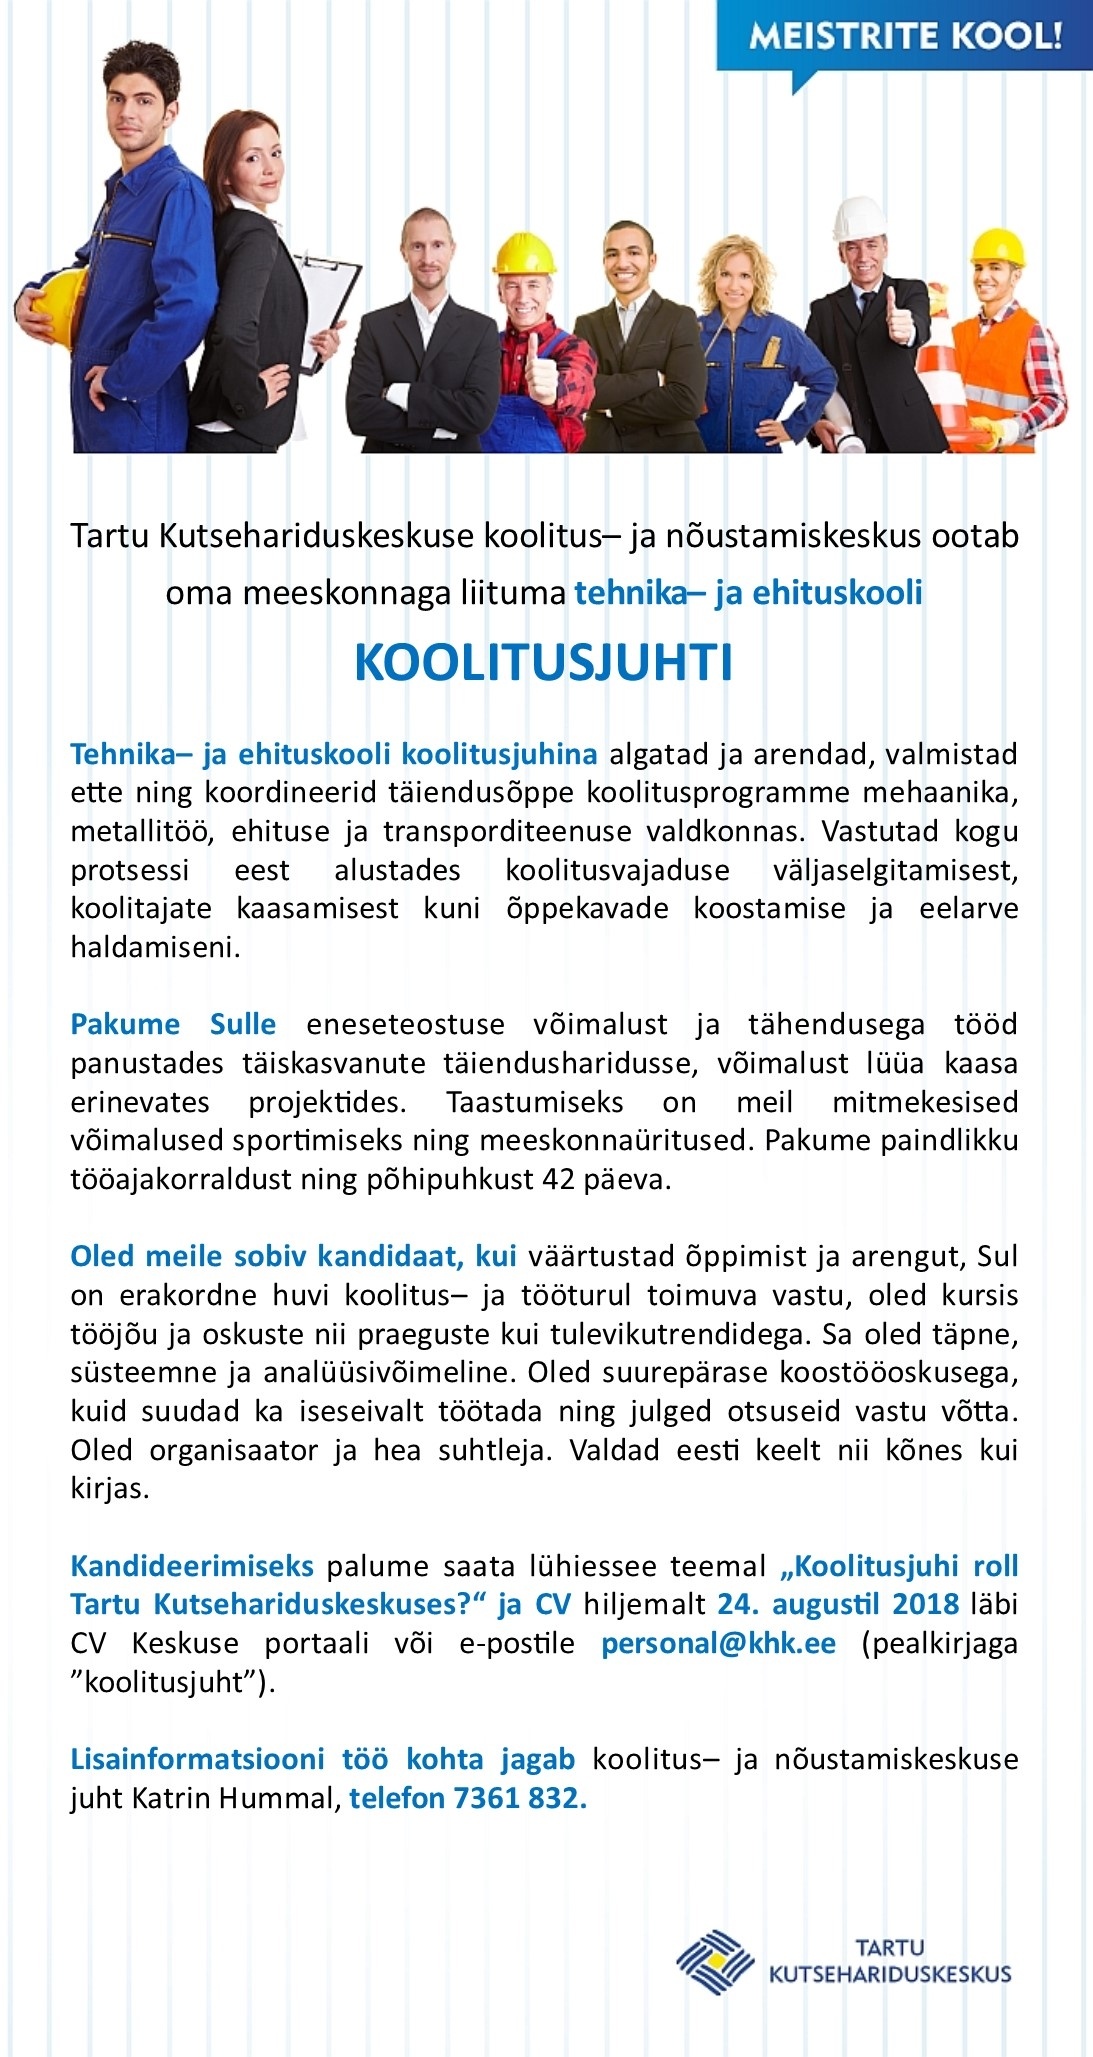 Tartu Kutsehariduskeskus Koolitusjuht